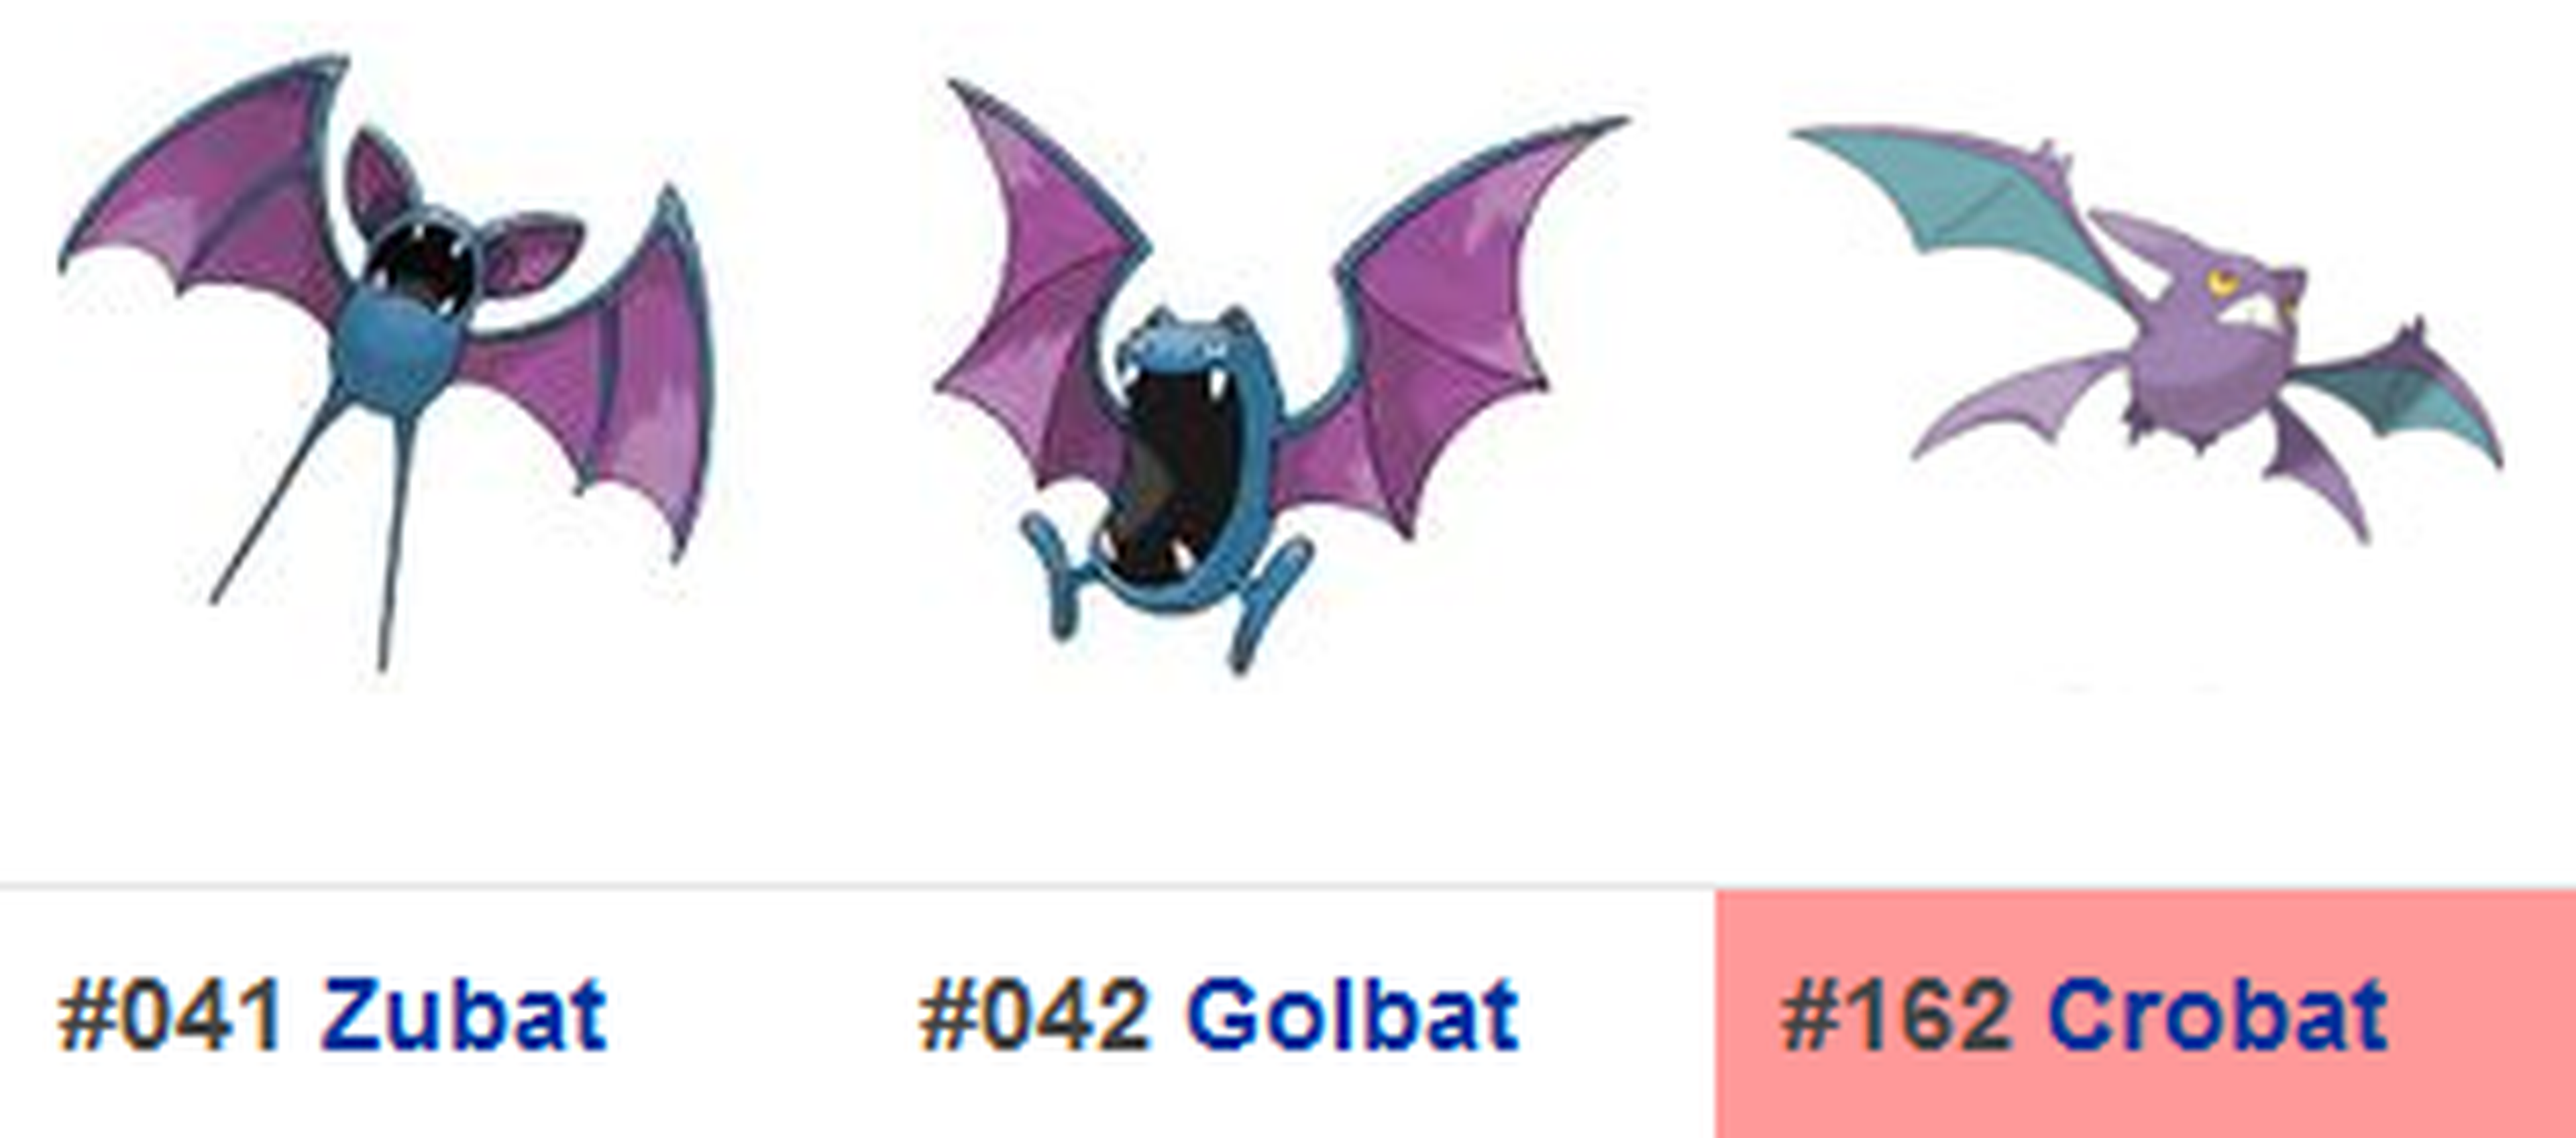 Crobat se incorporaría en la 2ª generación de Pokémon GO